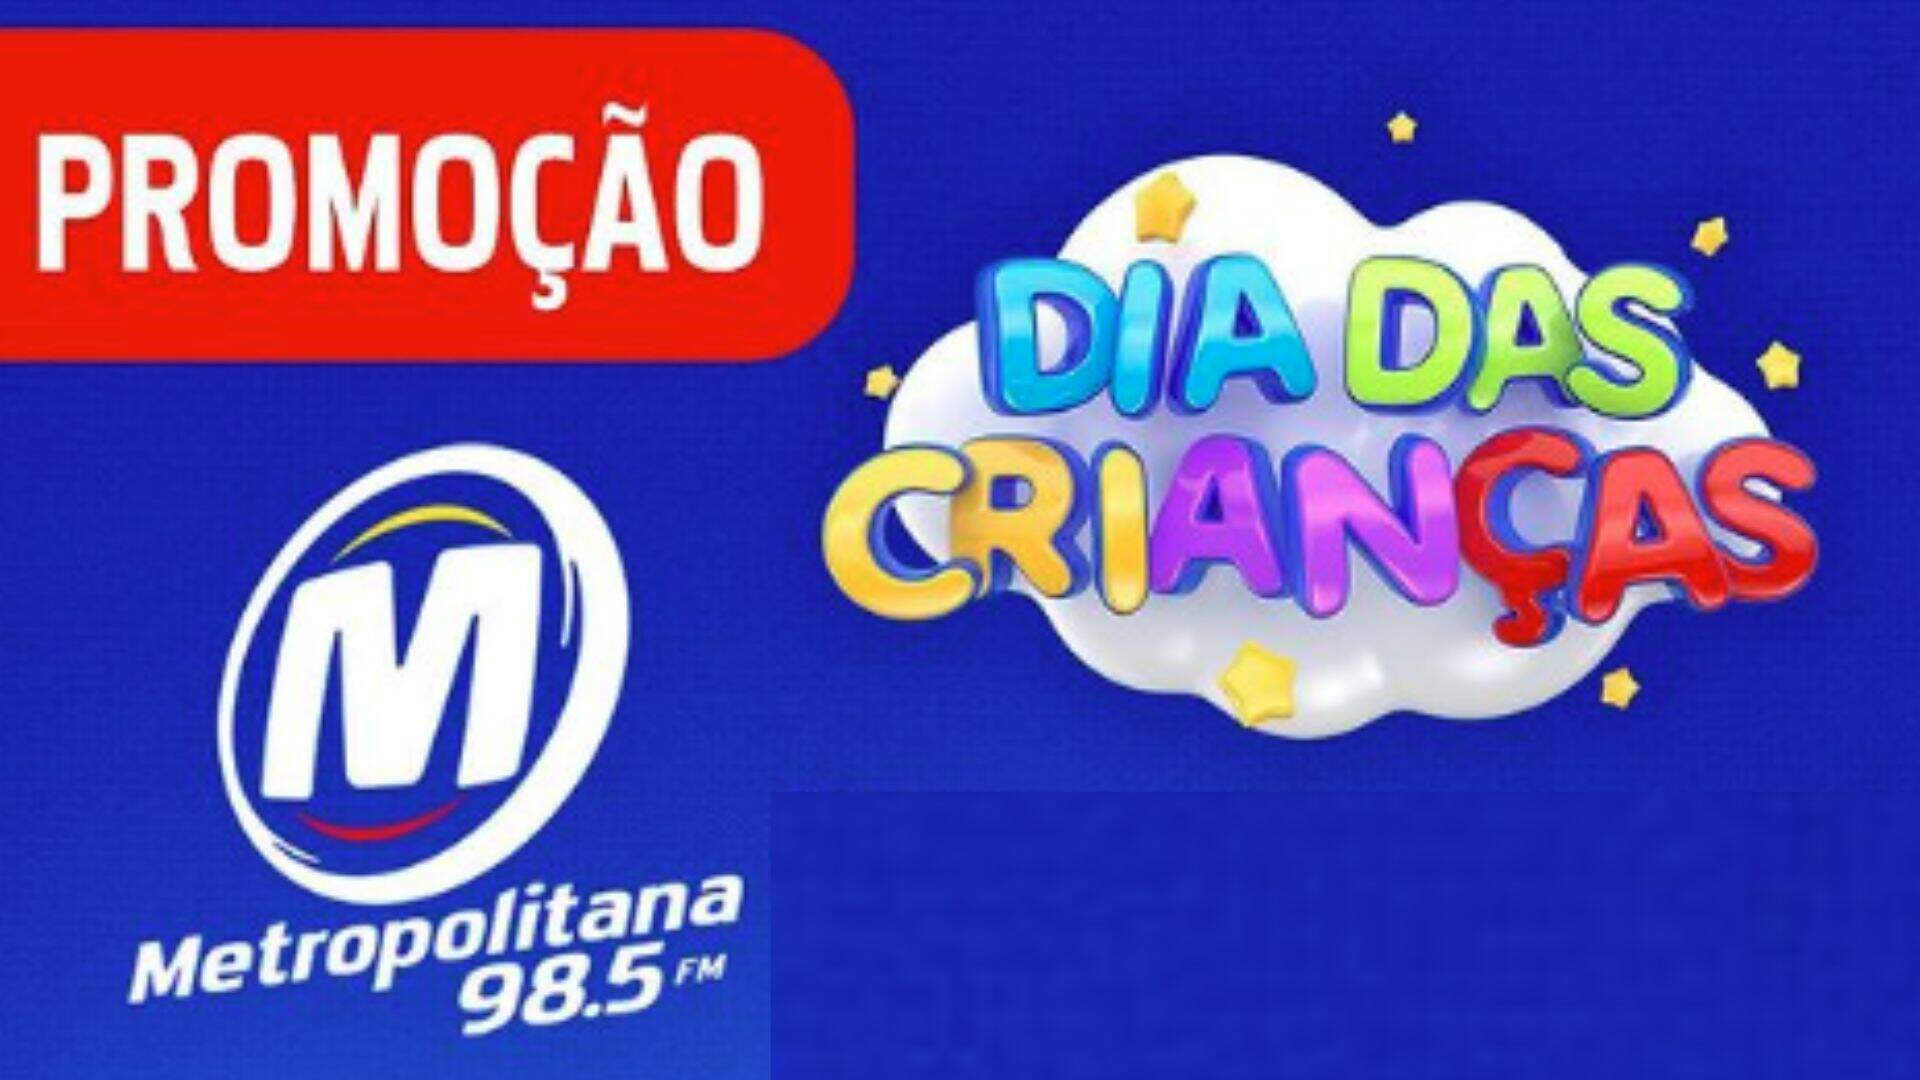 [ENCERRADA] Promoção: DIA DAS CRIANÇAS É NA METROPOLITANA FM - Metropolitana FM